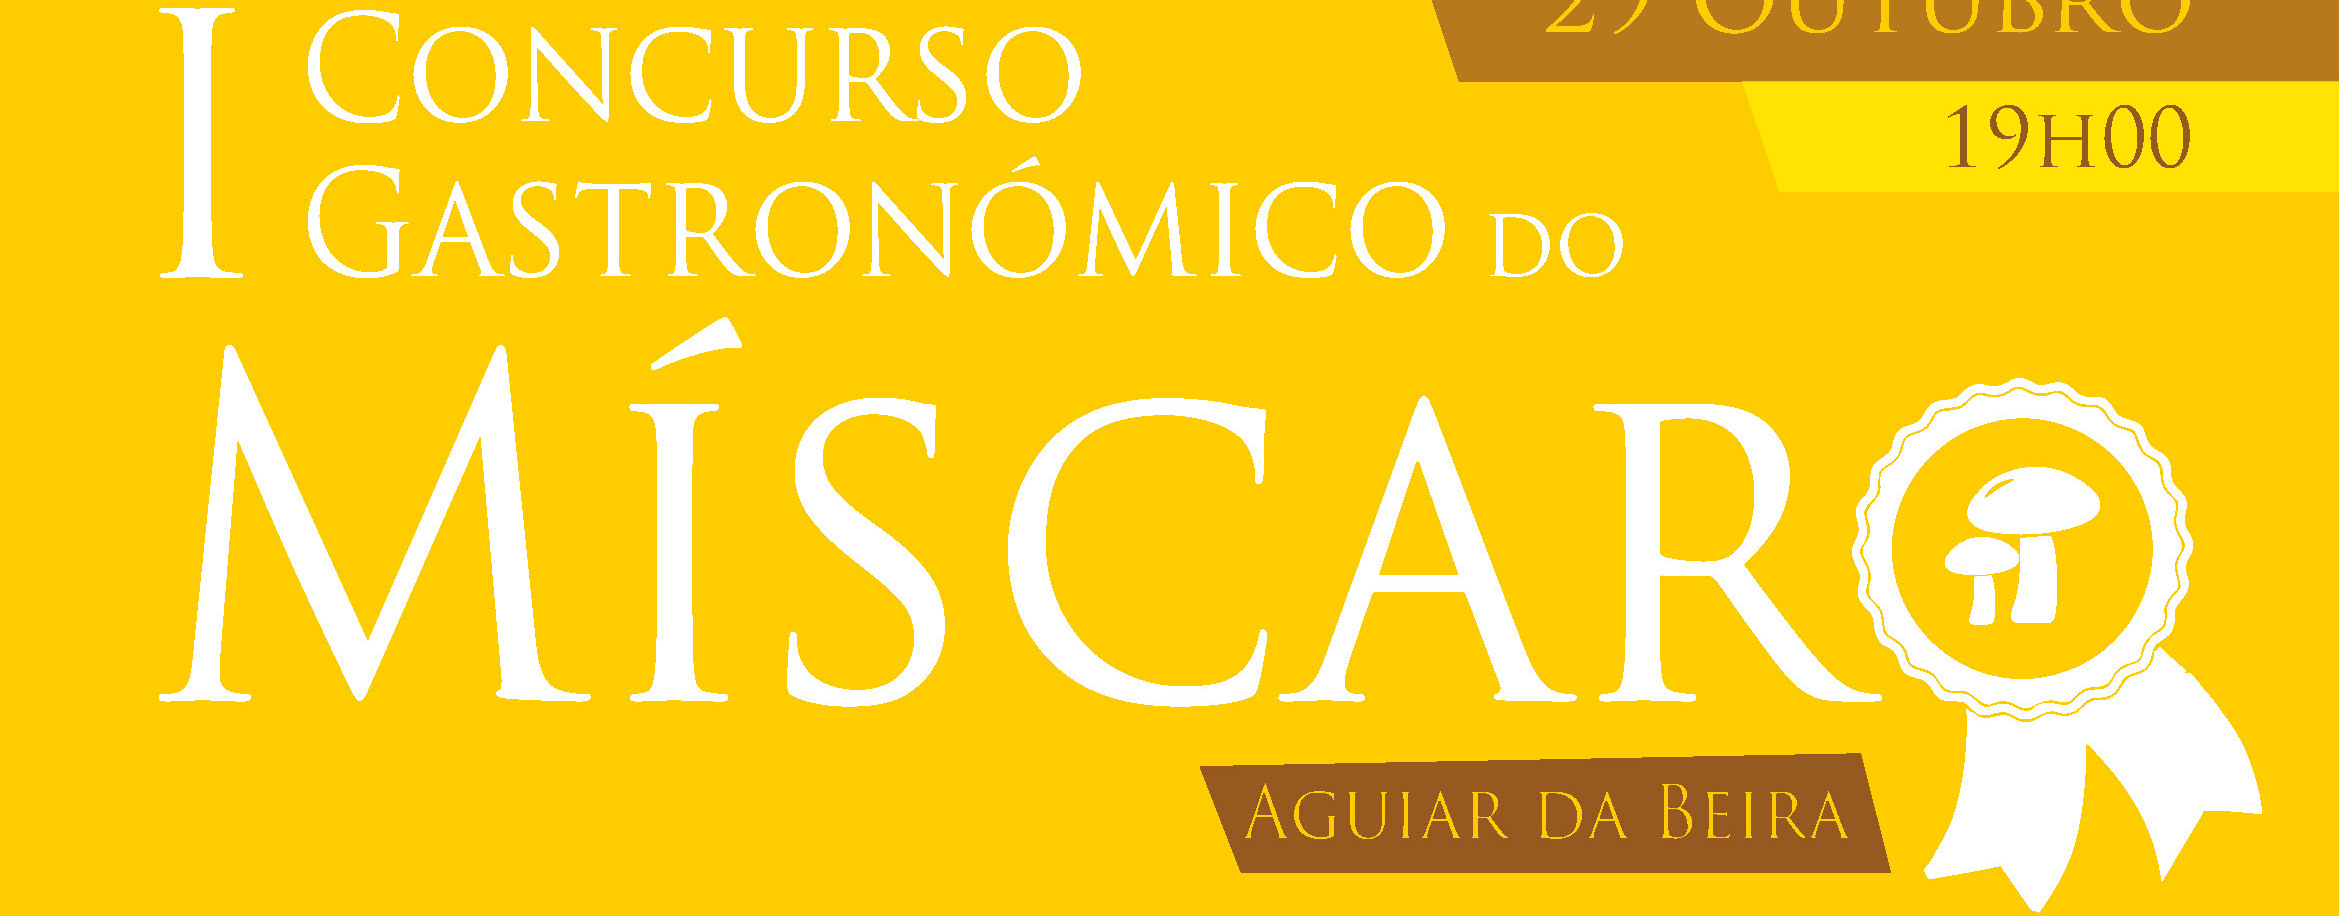 concurso-miscaro-2016-banner